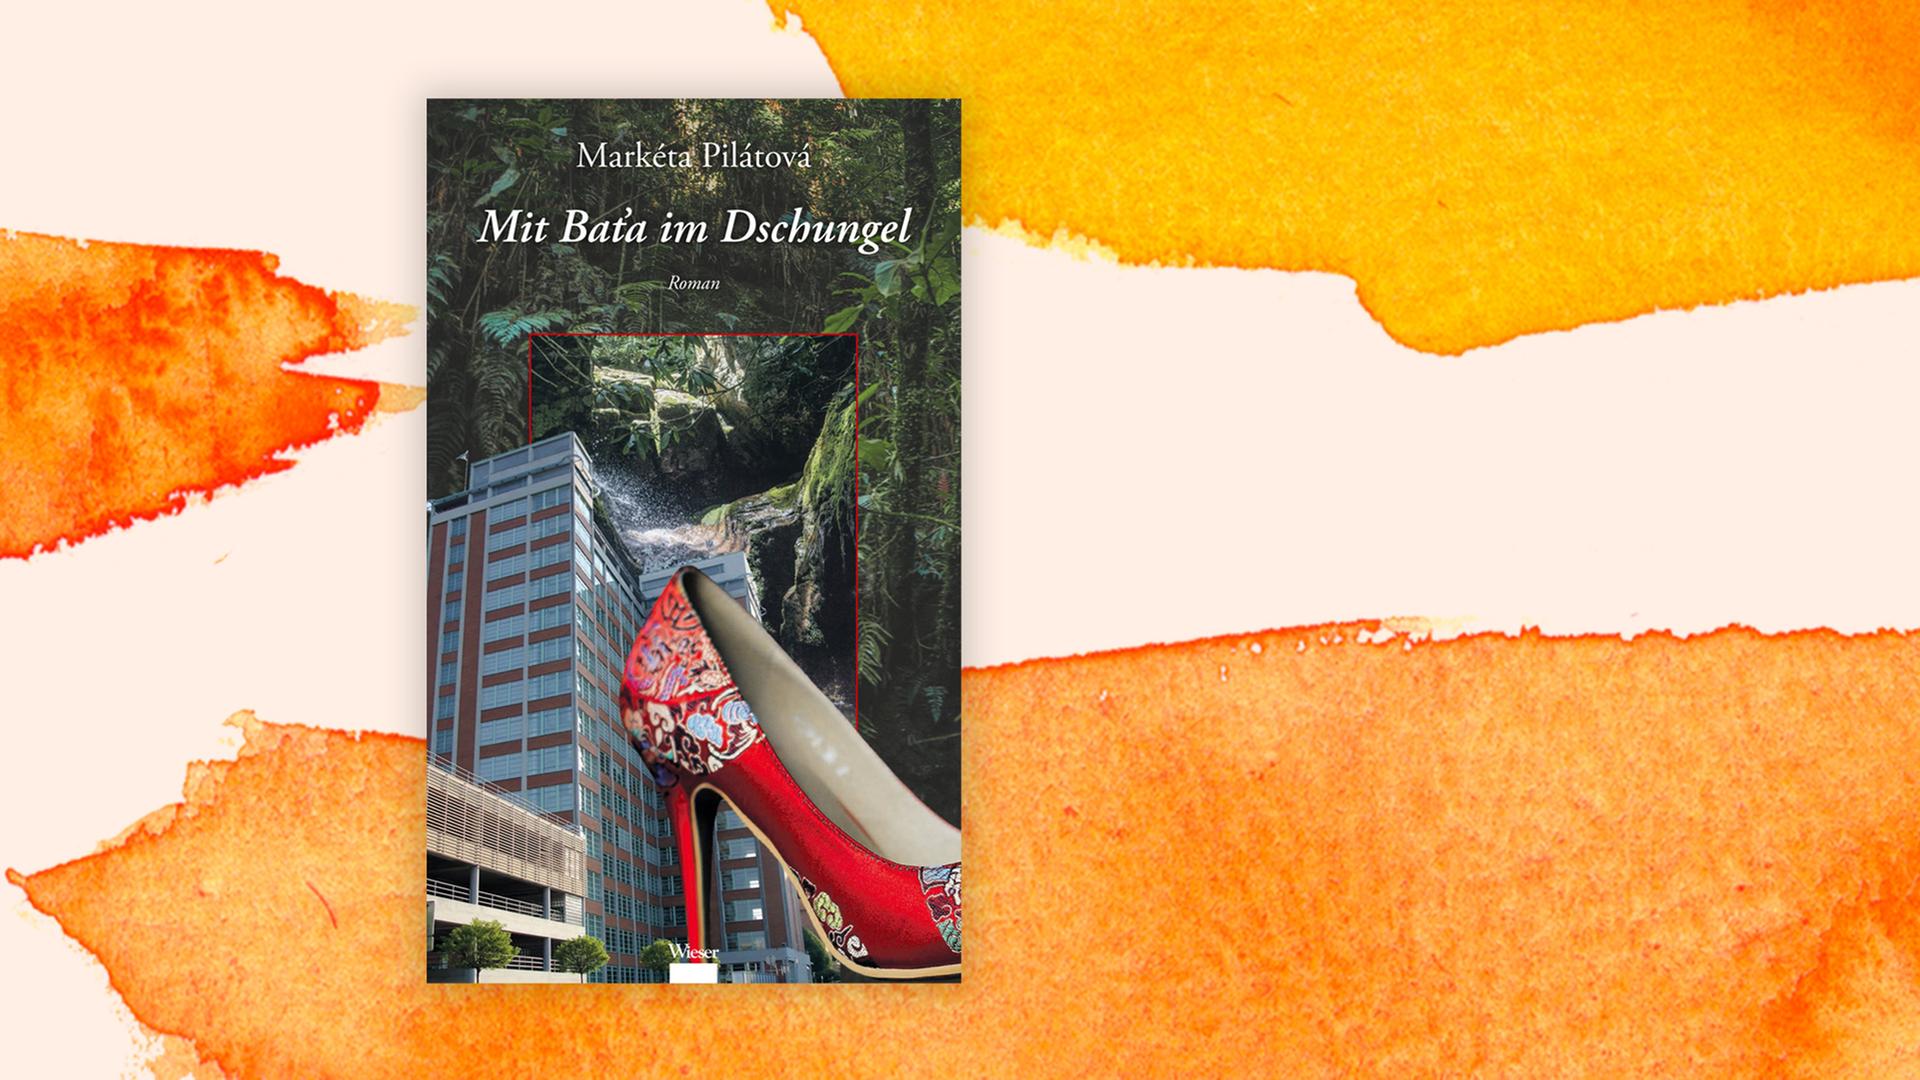 Das Cover des Buchs zeigt einen roten Stöckelschuh, ein Hochhaus und dunklegrünes Blattwerk.